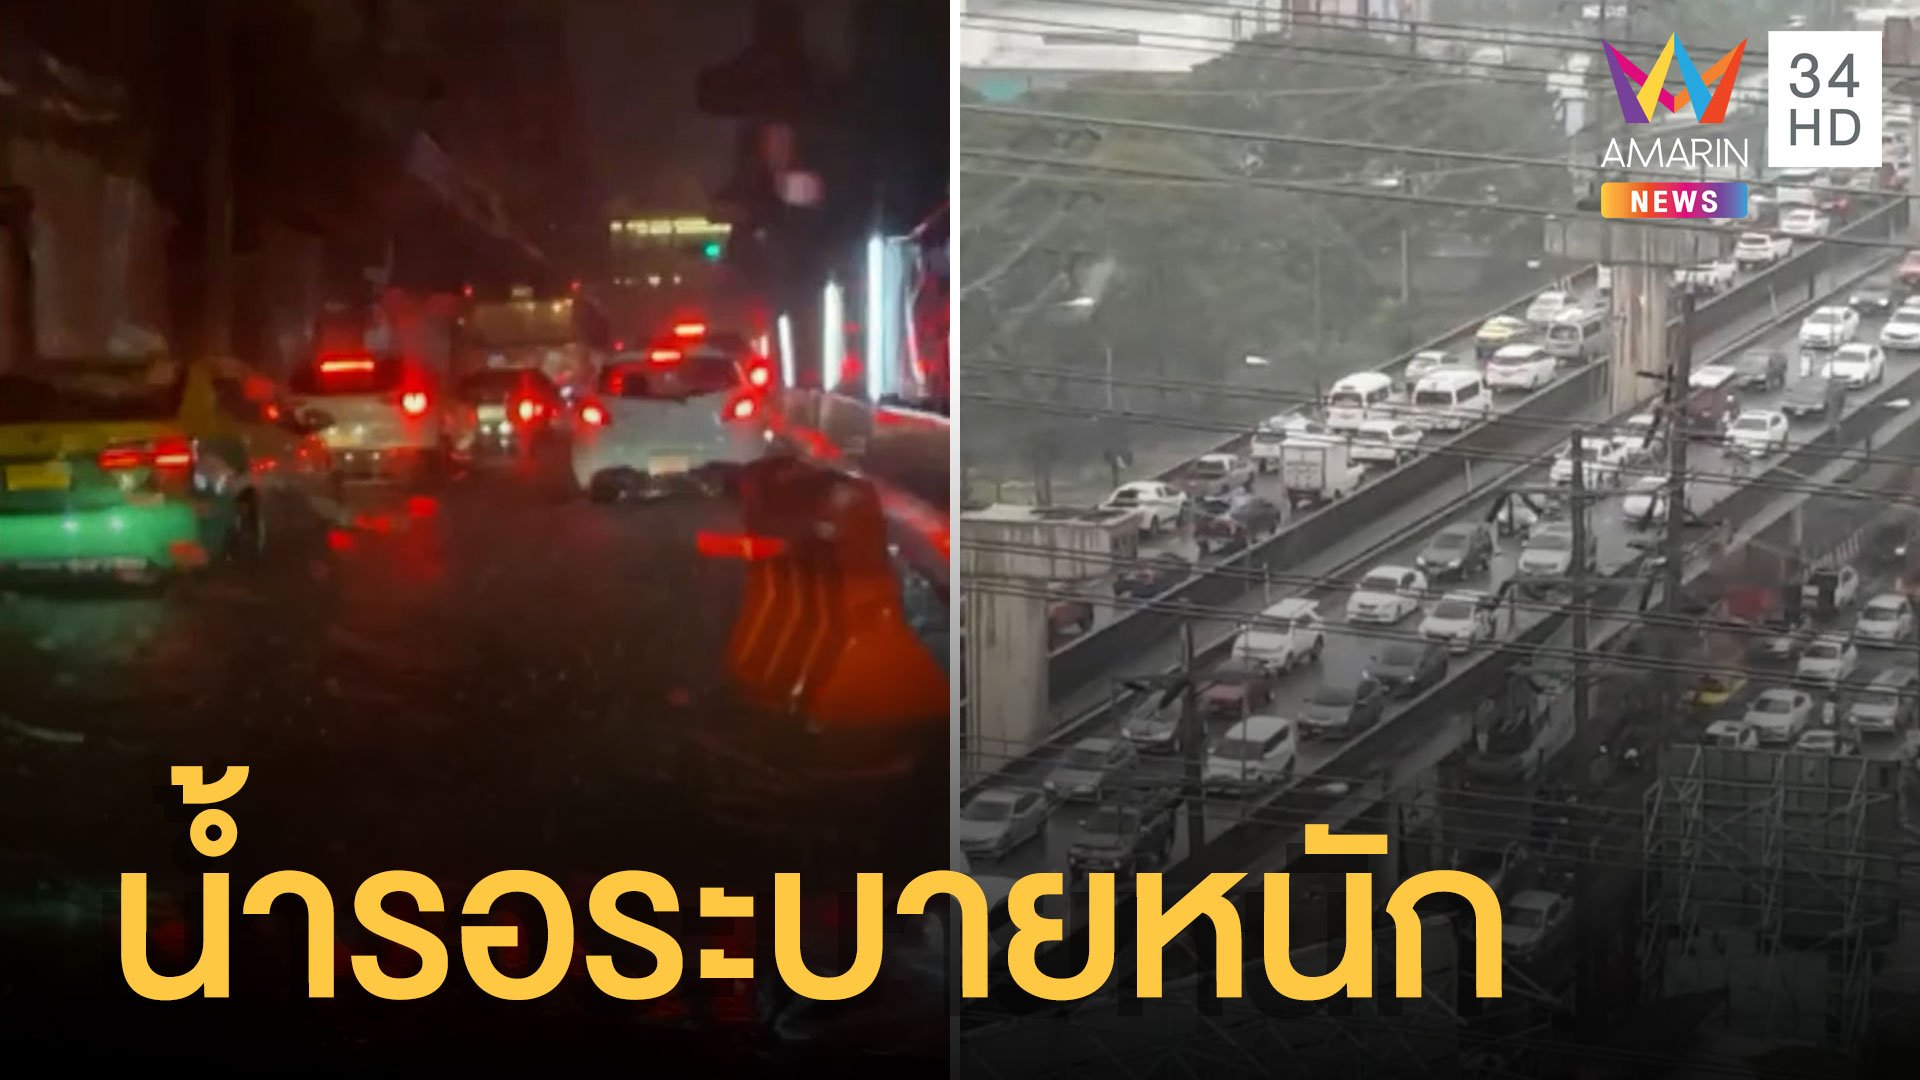 ฝนถล่มกรุงน้ำรอระบายหลายเส้น รถติดตั้งแต่ค่ำยันตี 2 | ข่าวอรุณอมรินทร์ | 18 พ.ค. 65 | AMARIN TVHD34